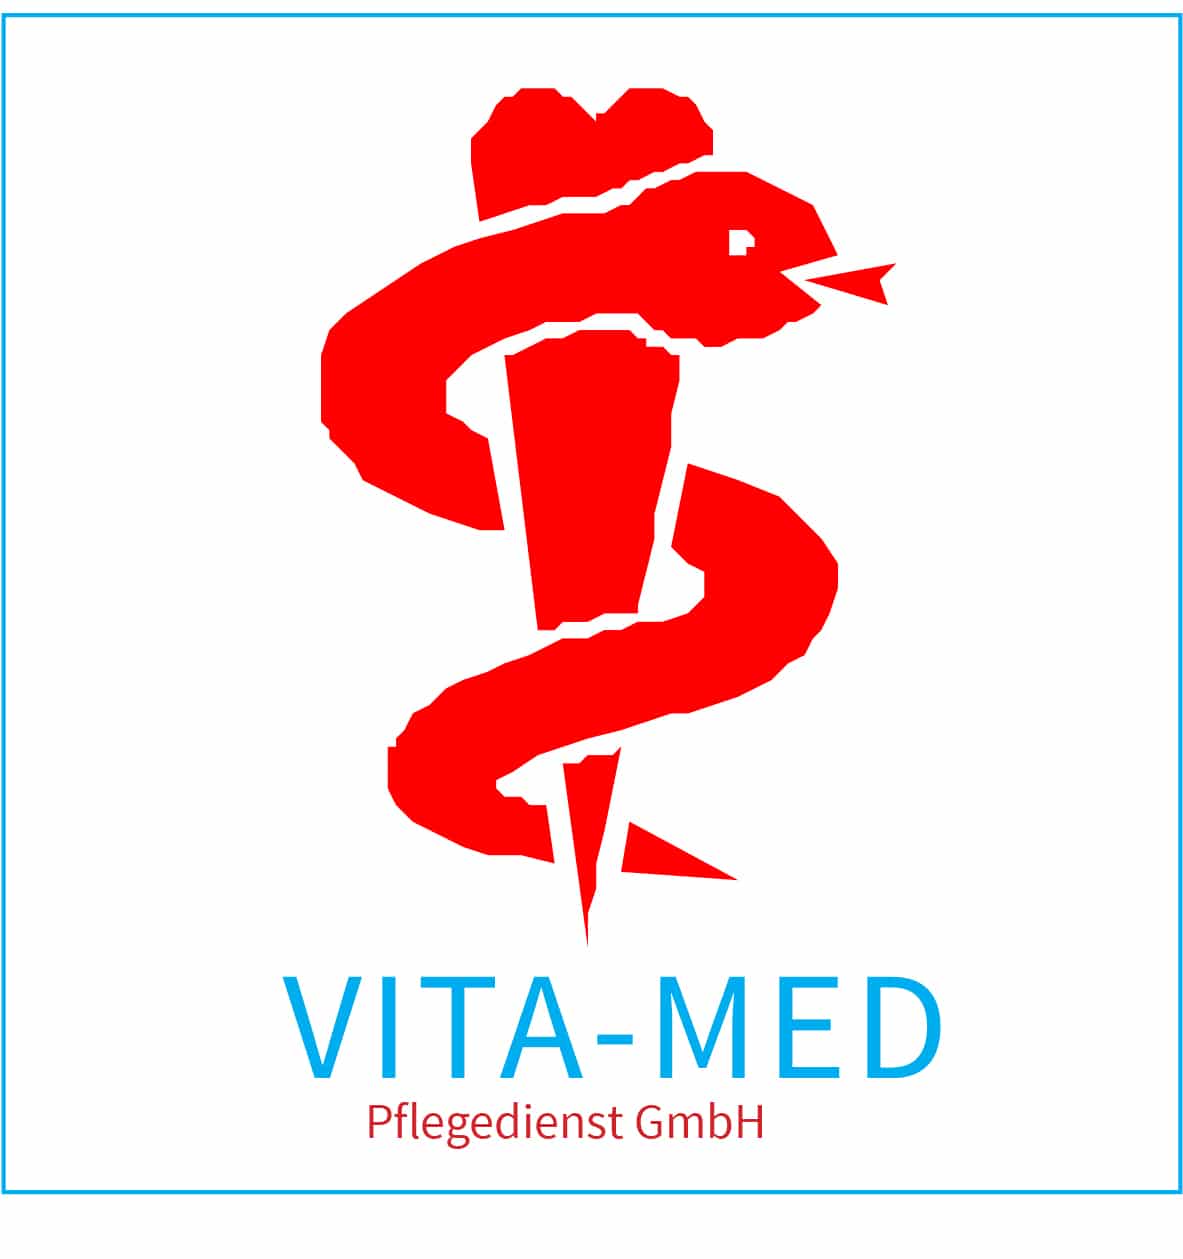 VITA-MED-Pflegedienst